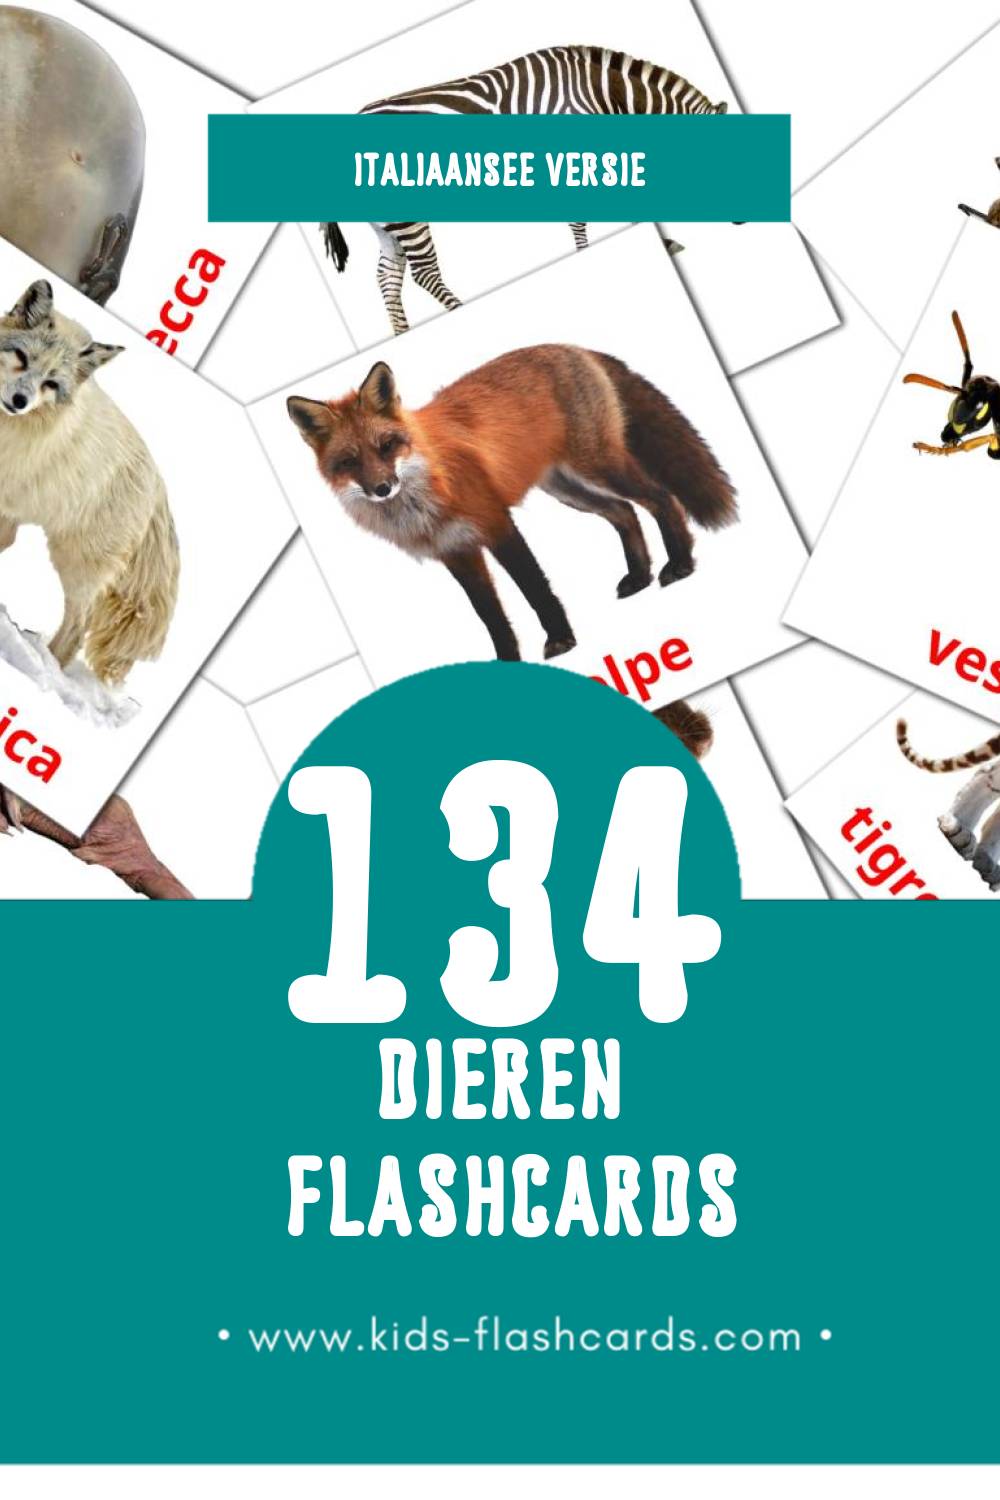 Visuele Animali Flashcards voor Kleuters (134 kaarten in het Italiaanse)